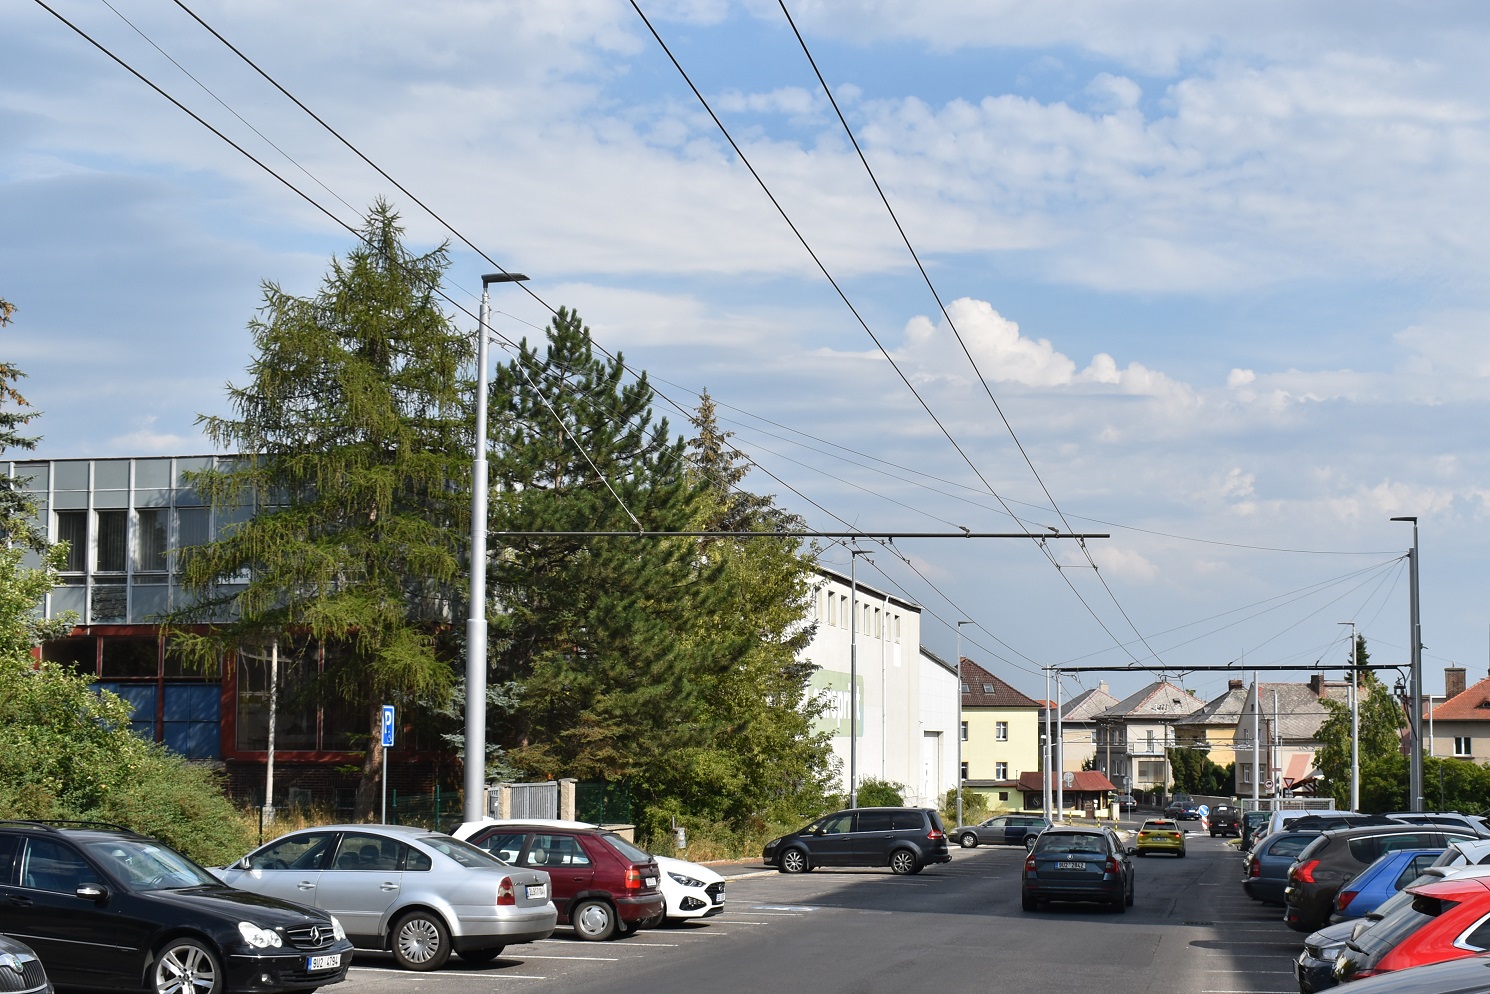 Теплице — Троллейбусные линии и инфраструктура